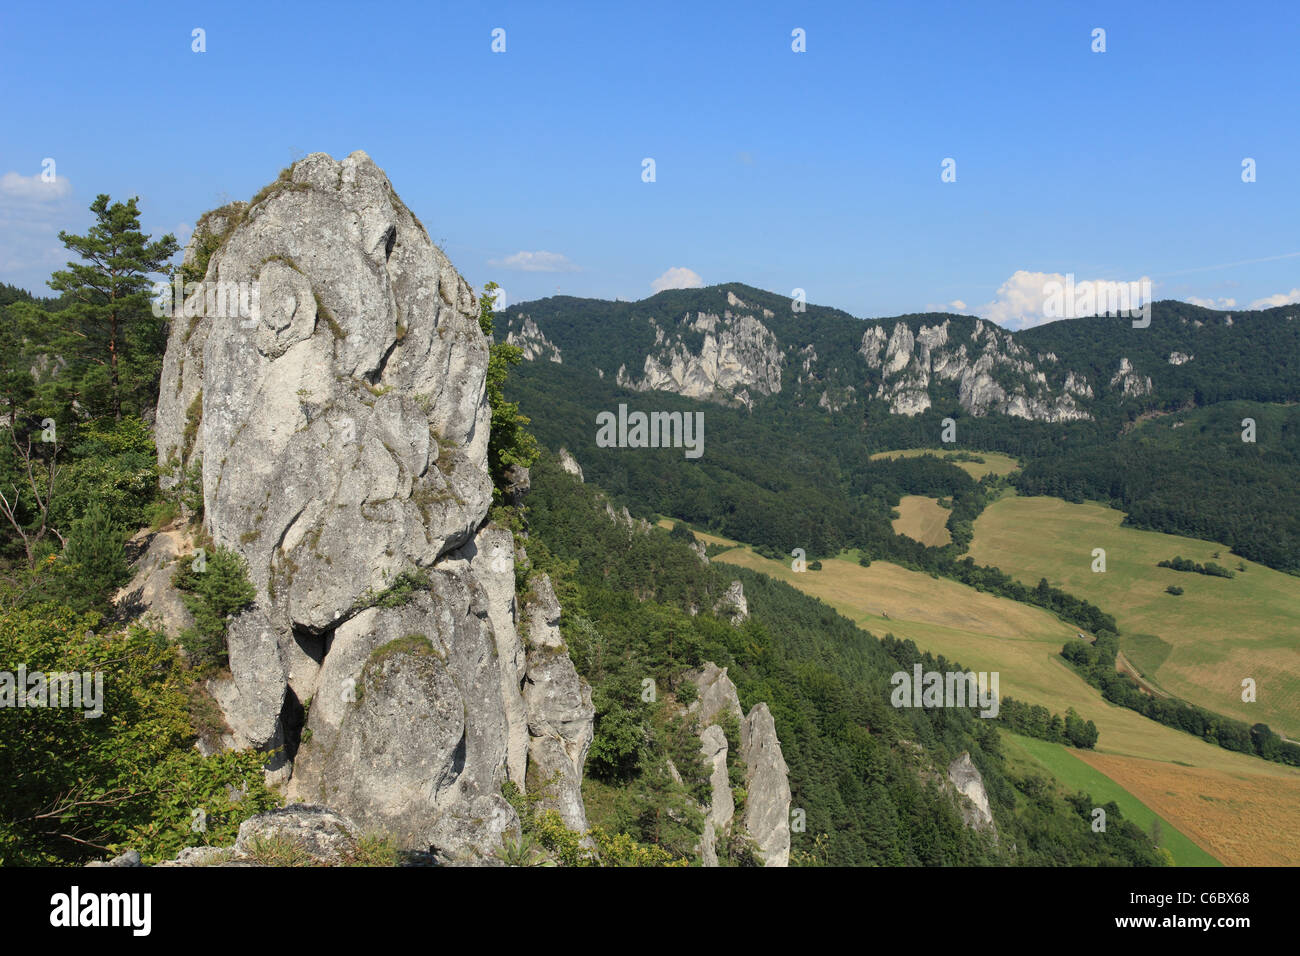 Blick auf das Naturschutzgebiet zwischen Reserwationgrenzen, Slowakei. Stockfoto